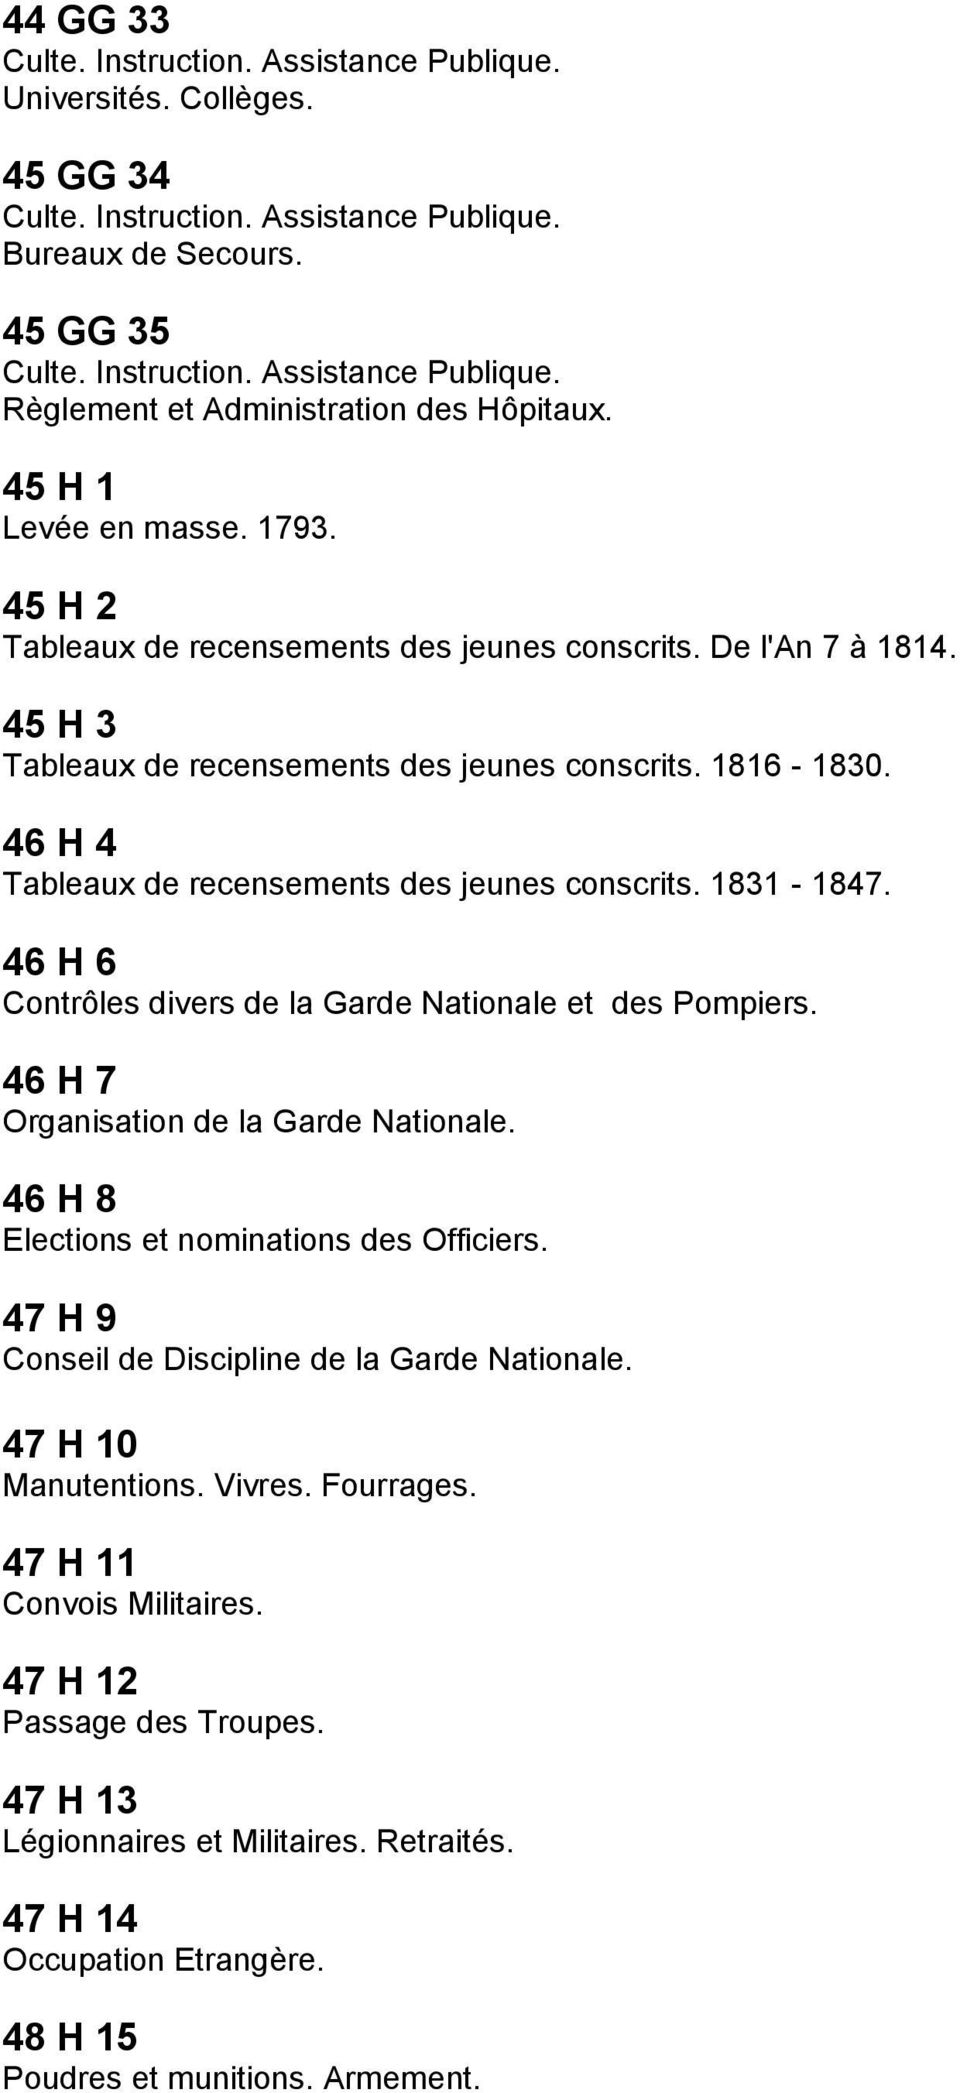 46 H 4 Tableaux de recensements des jeunes conscrits. 1831-1847. 46 H 6 Contrôles divers de la Garde Nationale et des Pompiers. 46 H 7 Organisation de la Garde Nationale.